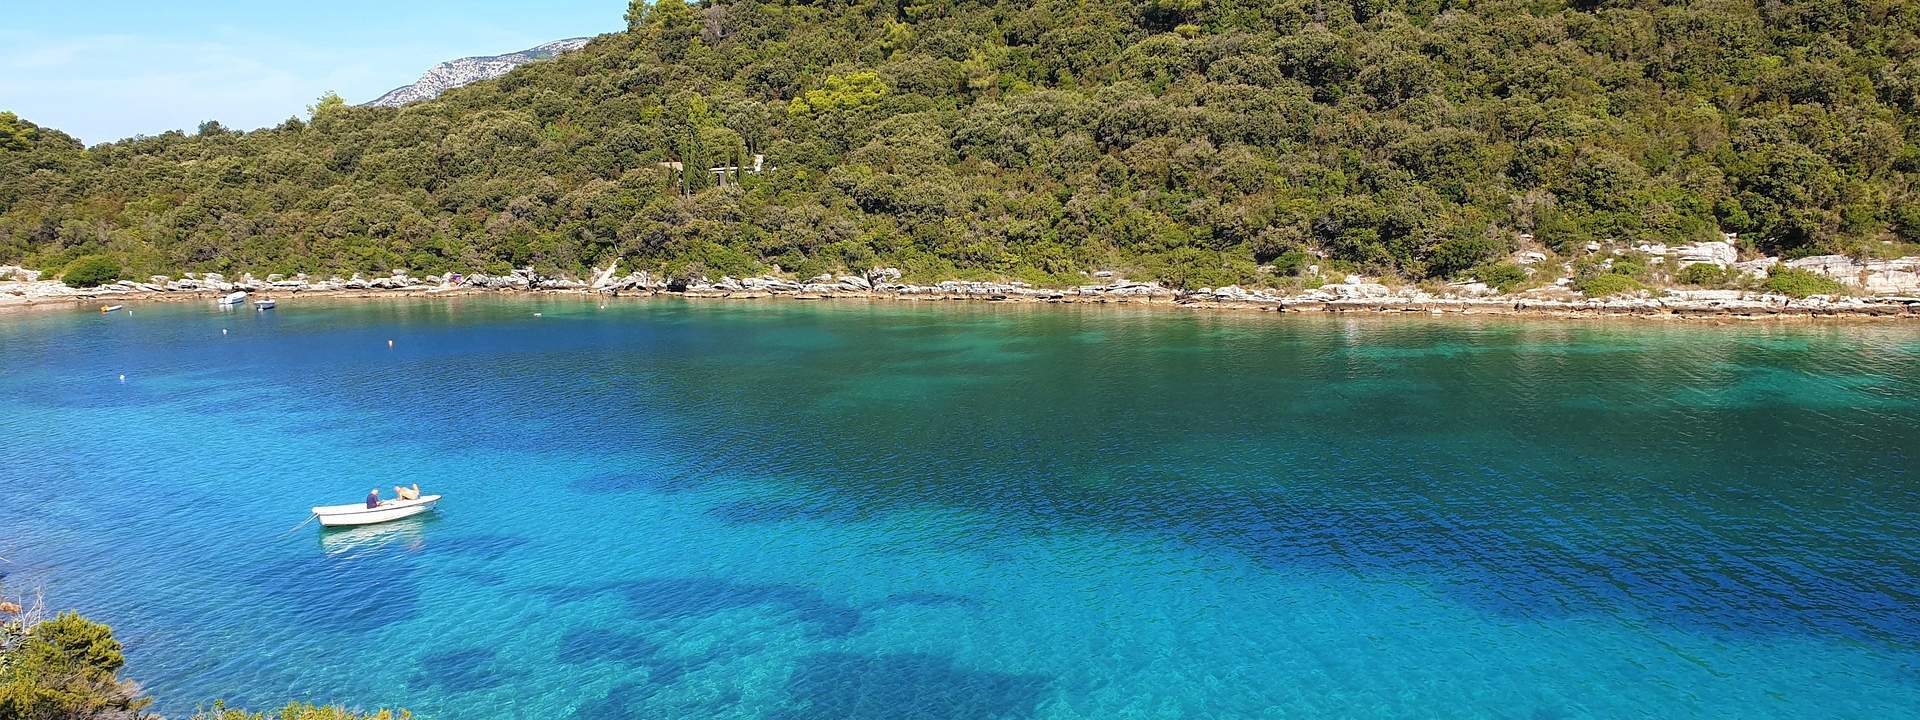 Готовы открыть для себя самые красивые места на Далматинских островах?